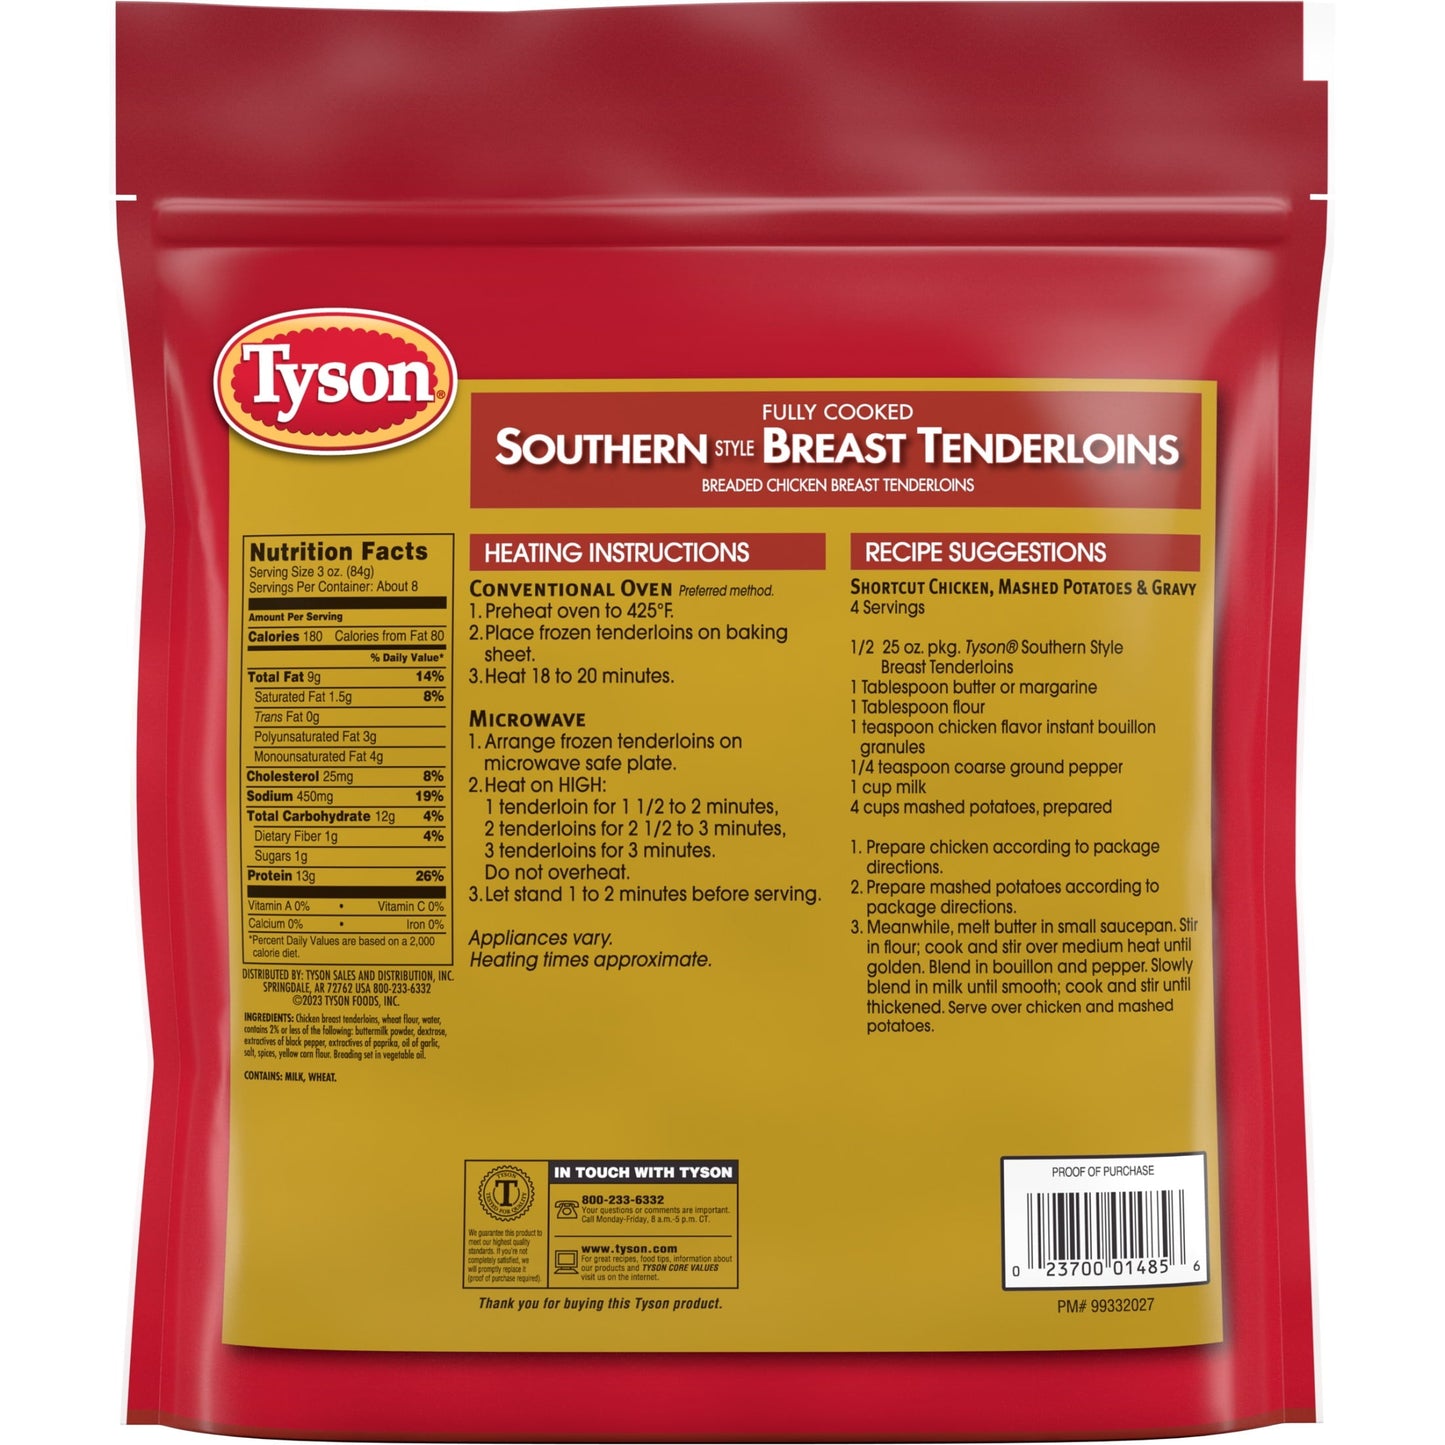 Tyson Southern Style Breaded Chicken Breast Tenderloins, 1.56 lb Bag (Frozen)